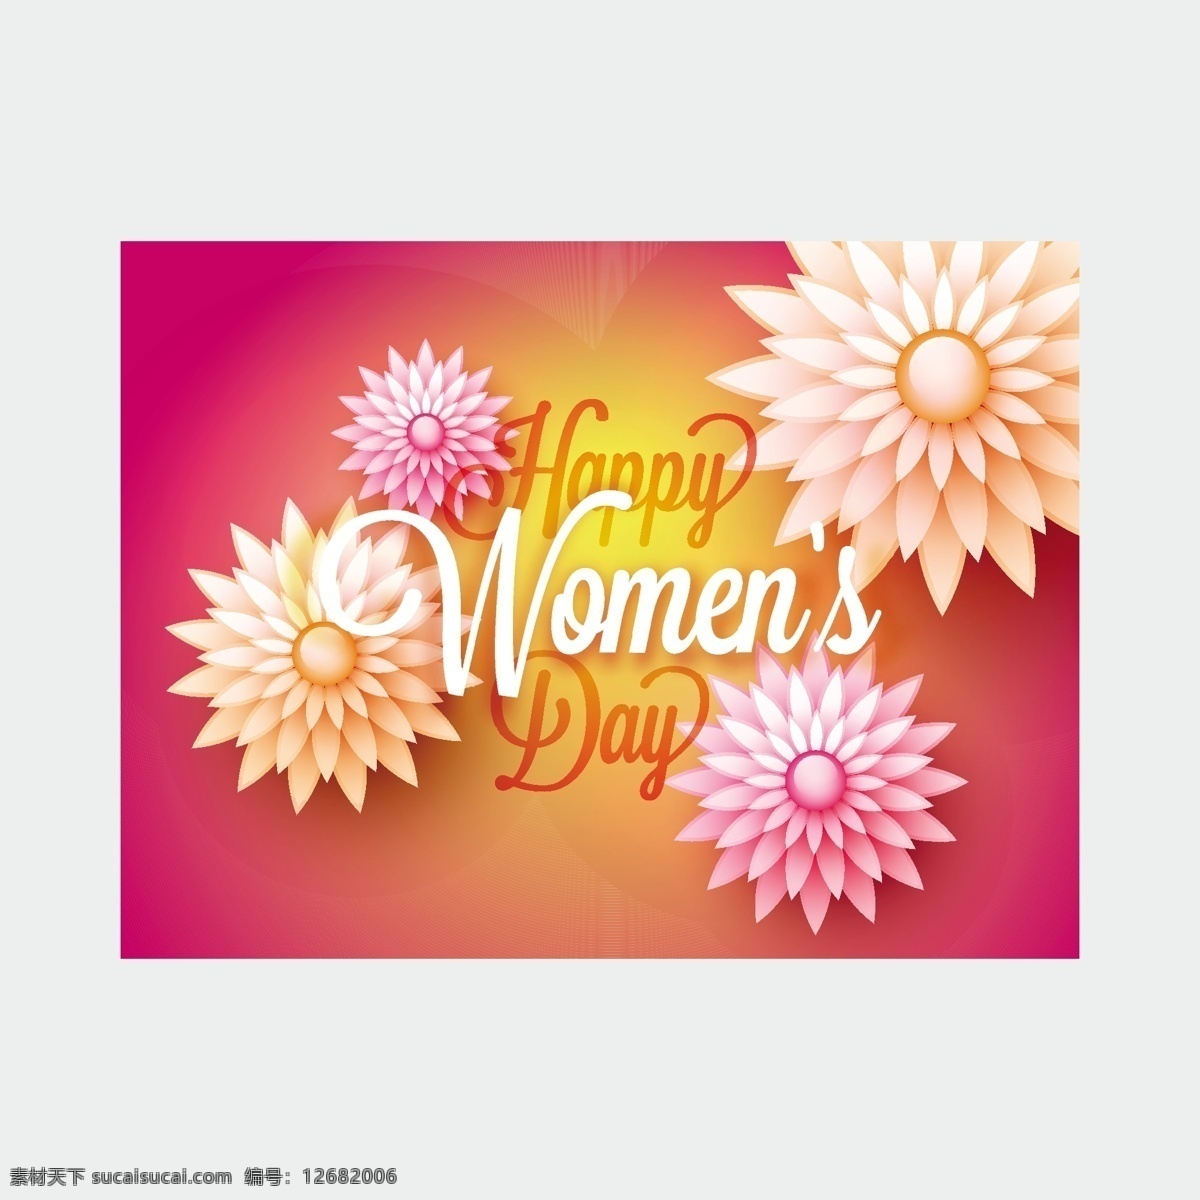 妇女节背景 背景 花卉 卡片 花卉背景 墙纸 色彩 庆典 假日 丰富多彩 庆祝 女士 女性 自由 国际